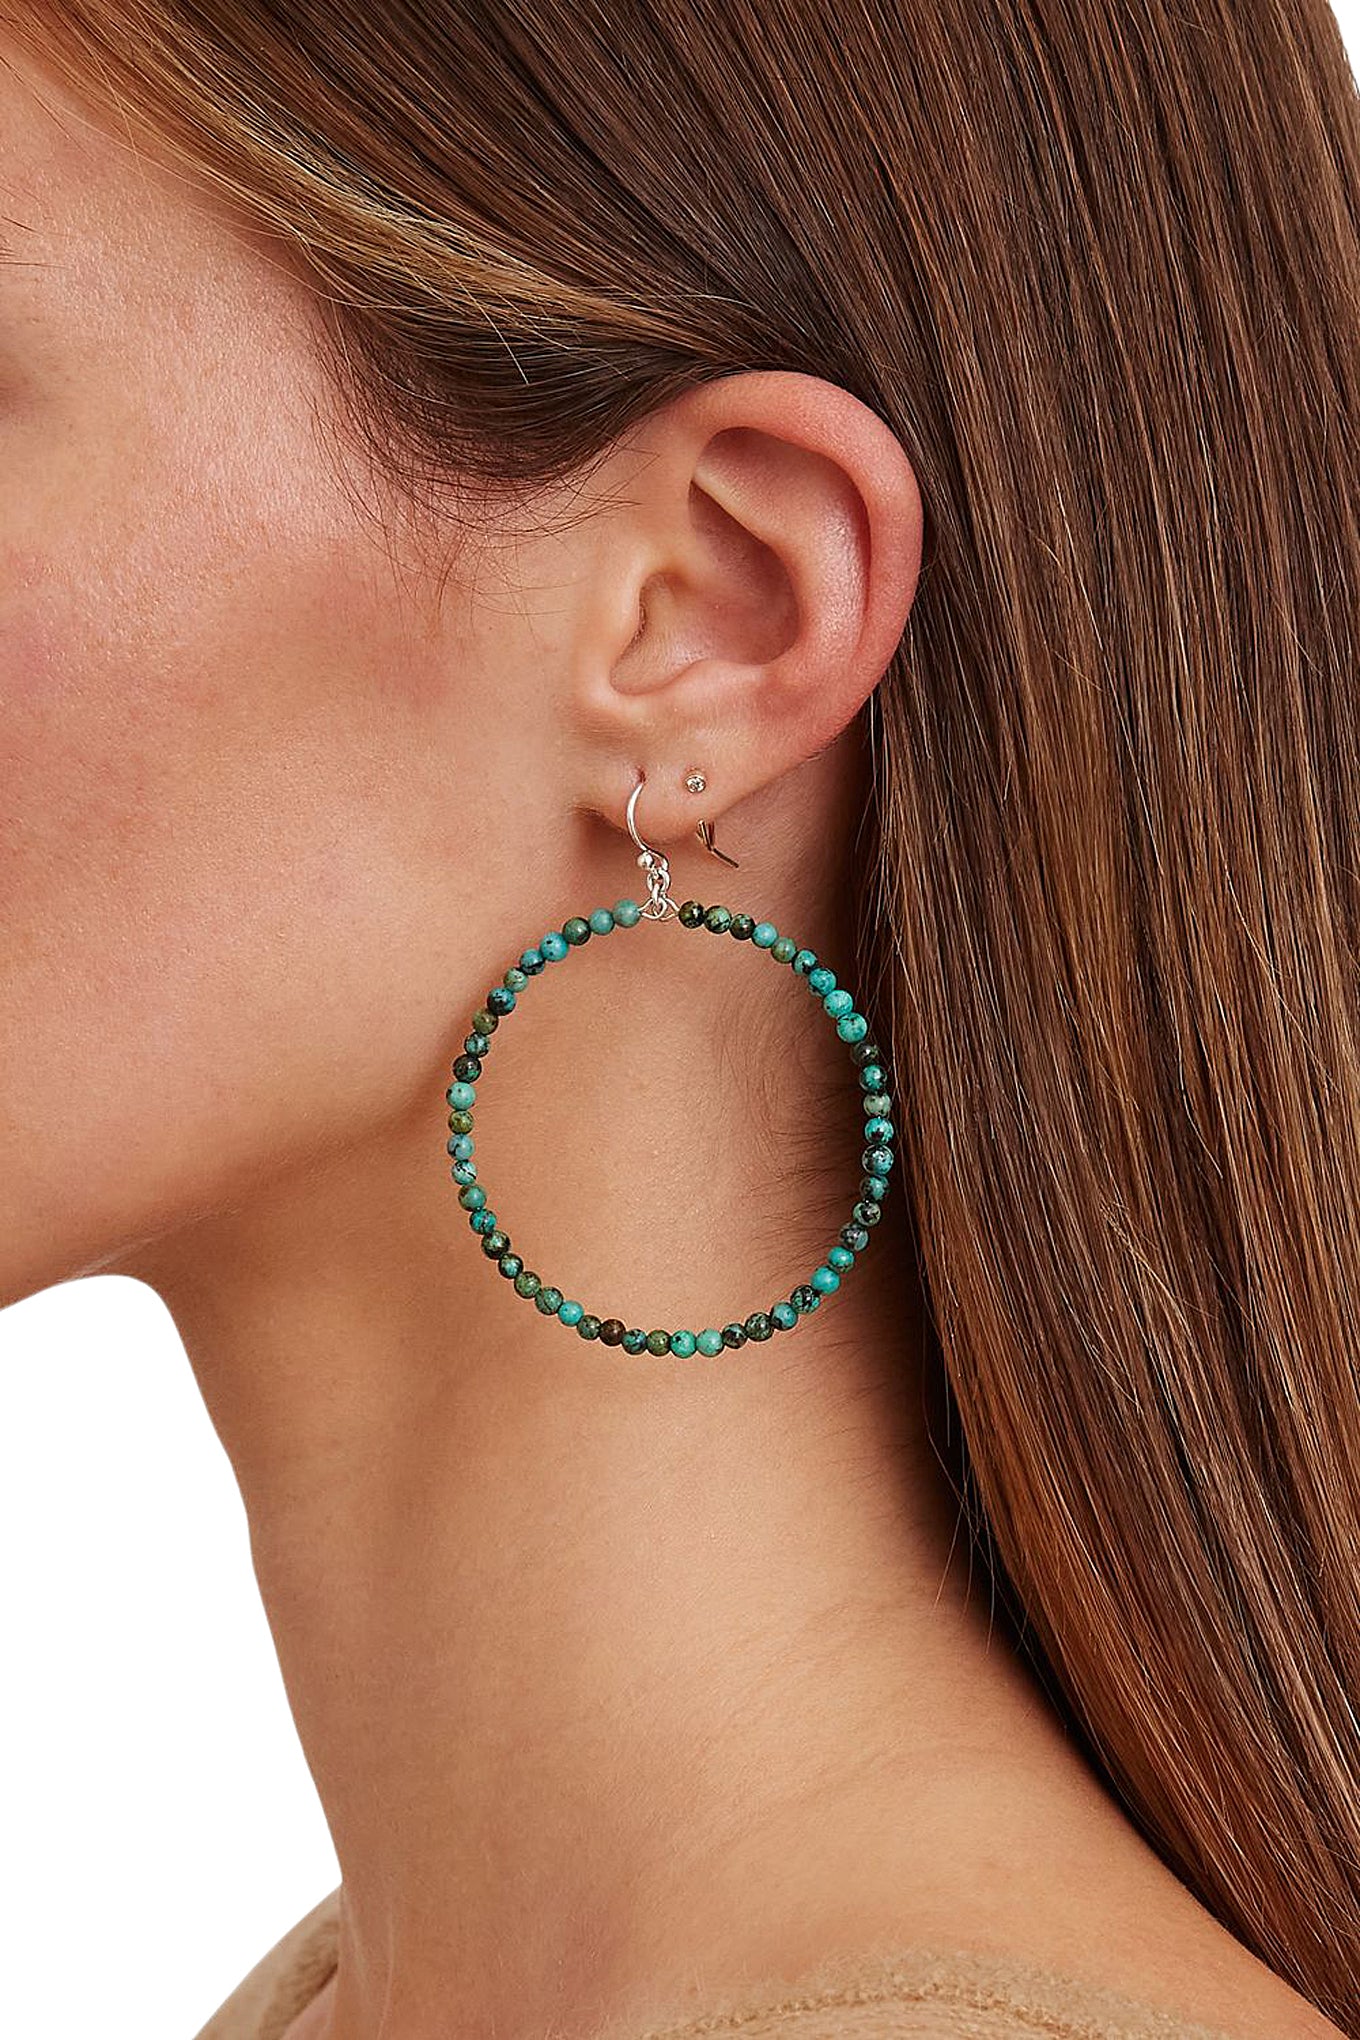 Chan Luu 2 Inch Silver Hoop Earrings in African Turquoise